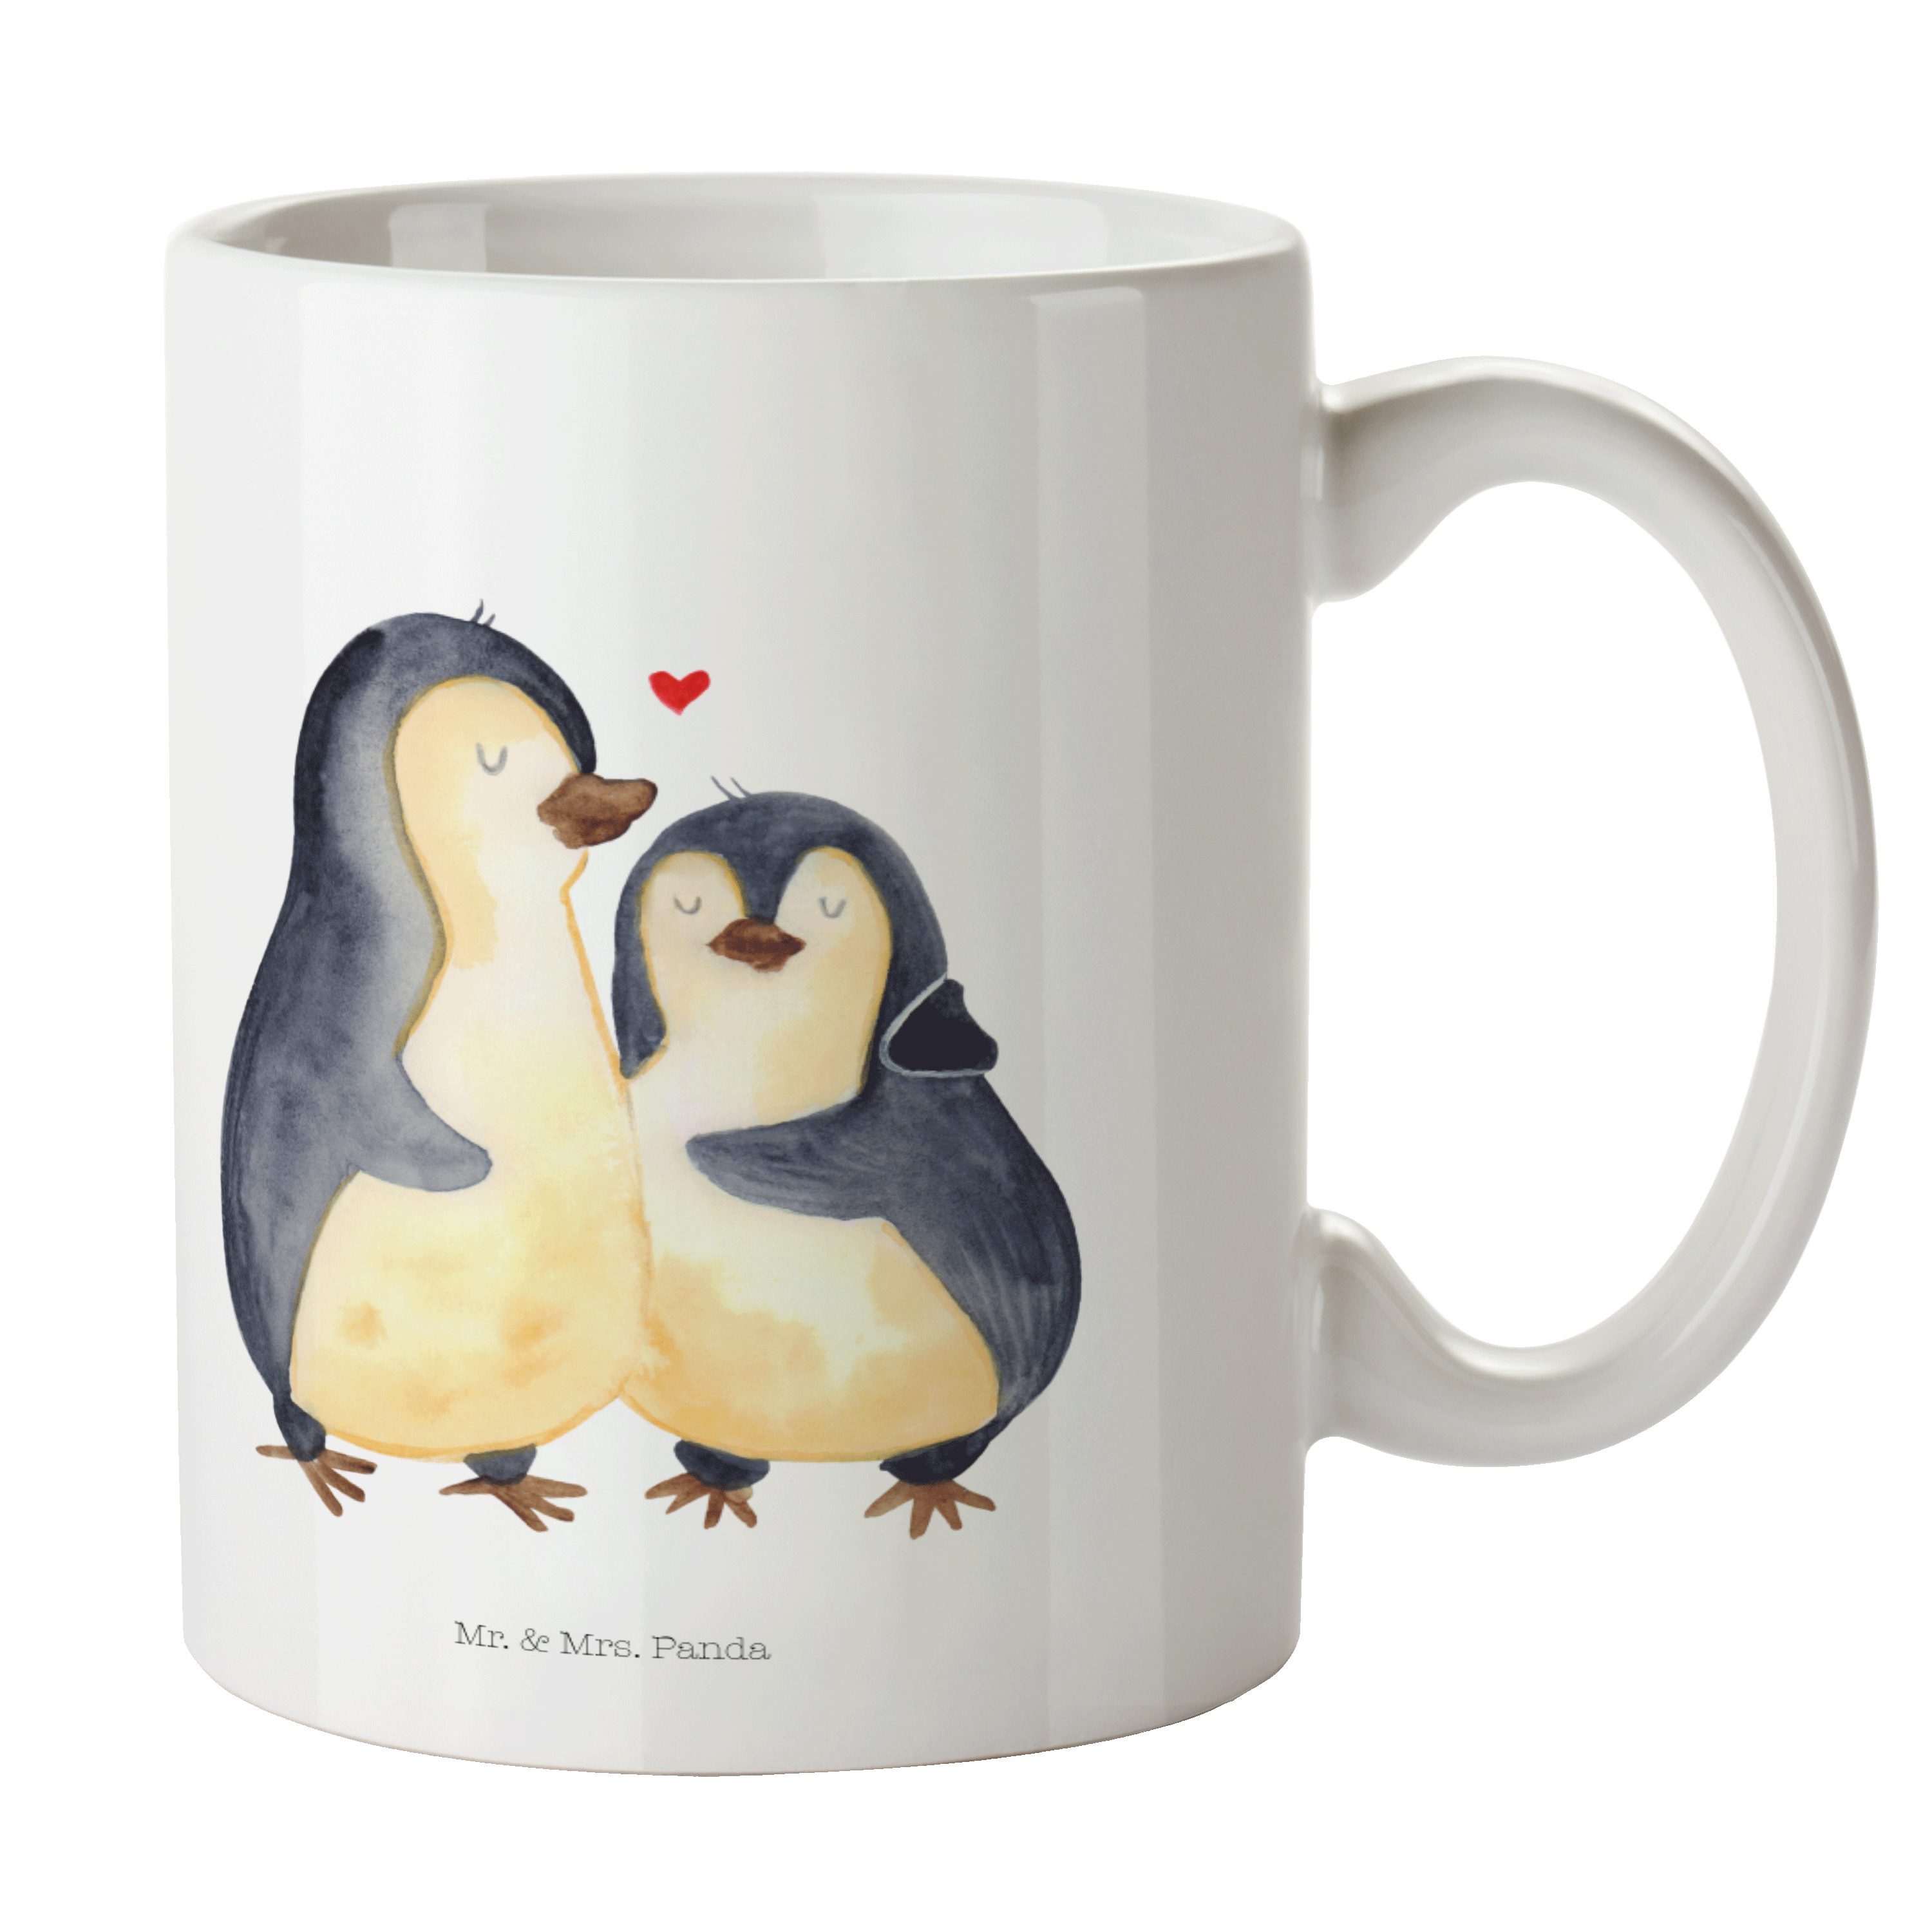 Mr. & Mrs. Panda Tasse Pinguin umarmend - Weiß - Geschenk, Becher, Hochzeit, Umarmung, Tasse, Keramik